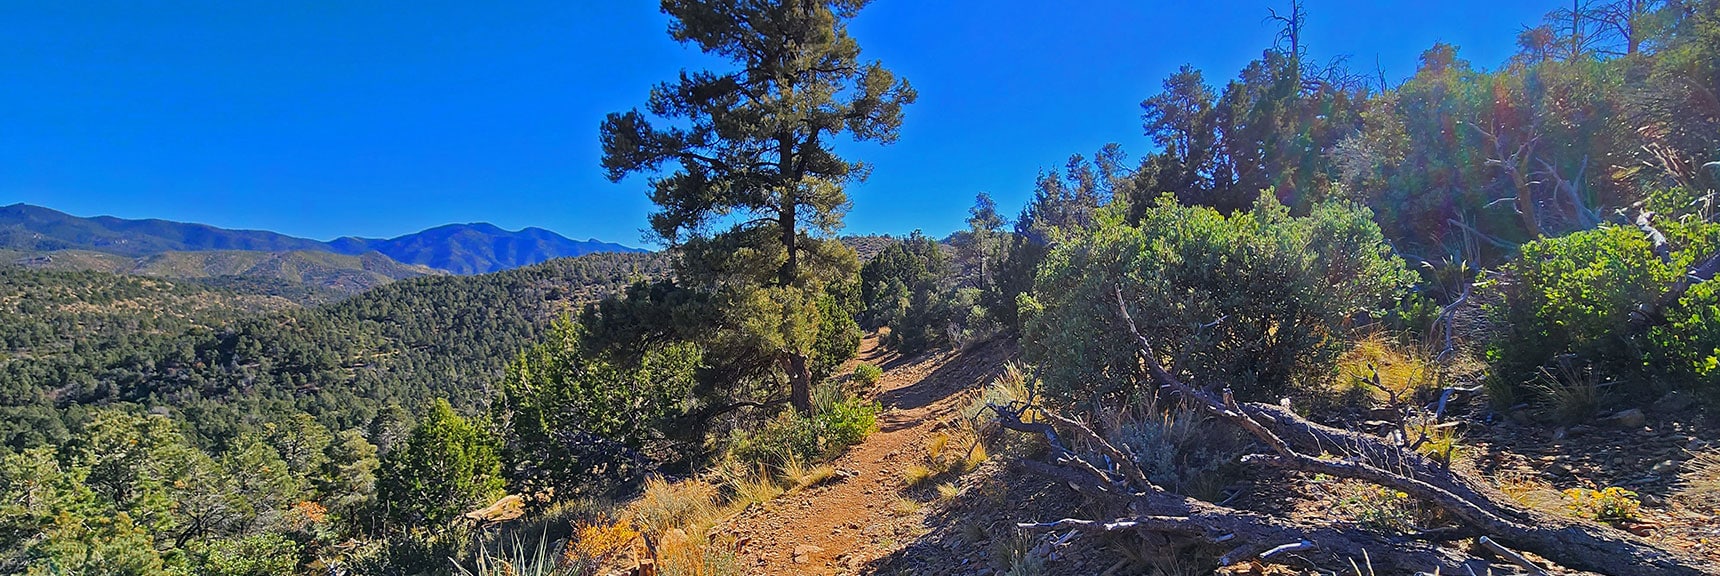 Rounding Corner, Heading Back on Upper Lovell Canyon Loop | Lovell Canyon Loop Trail | Lovell Canyon Nevada